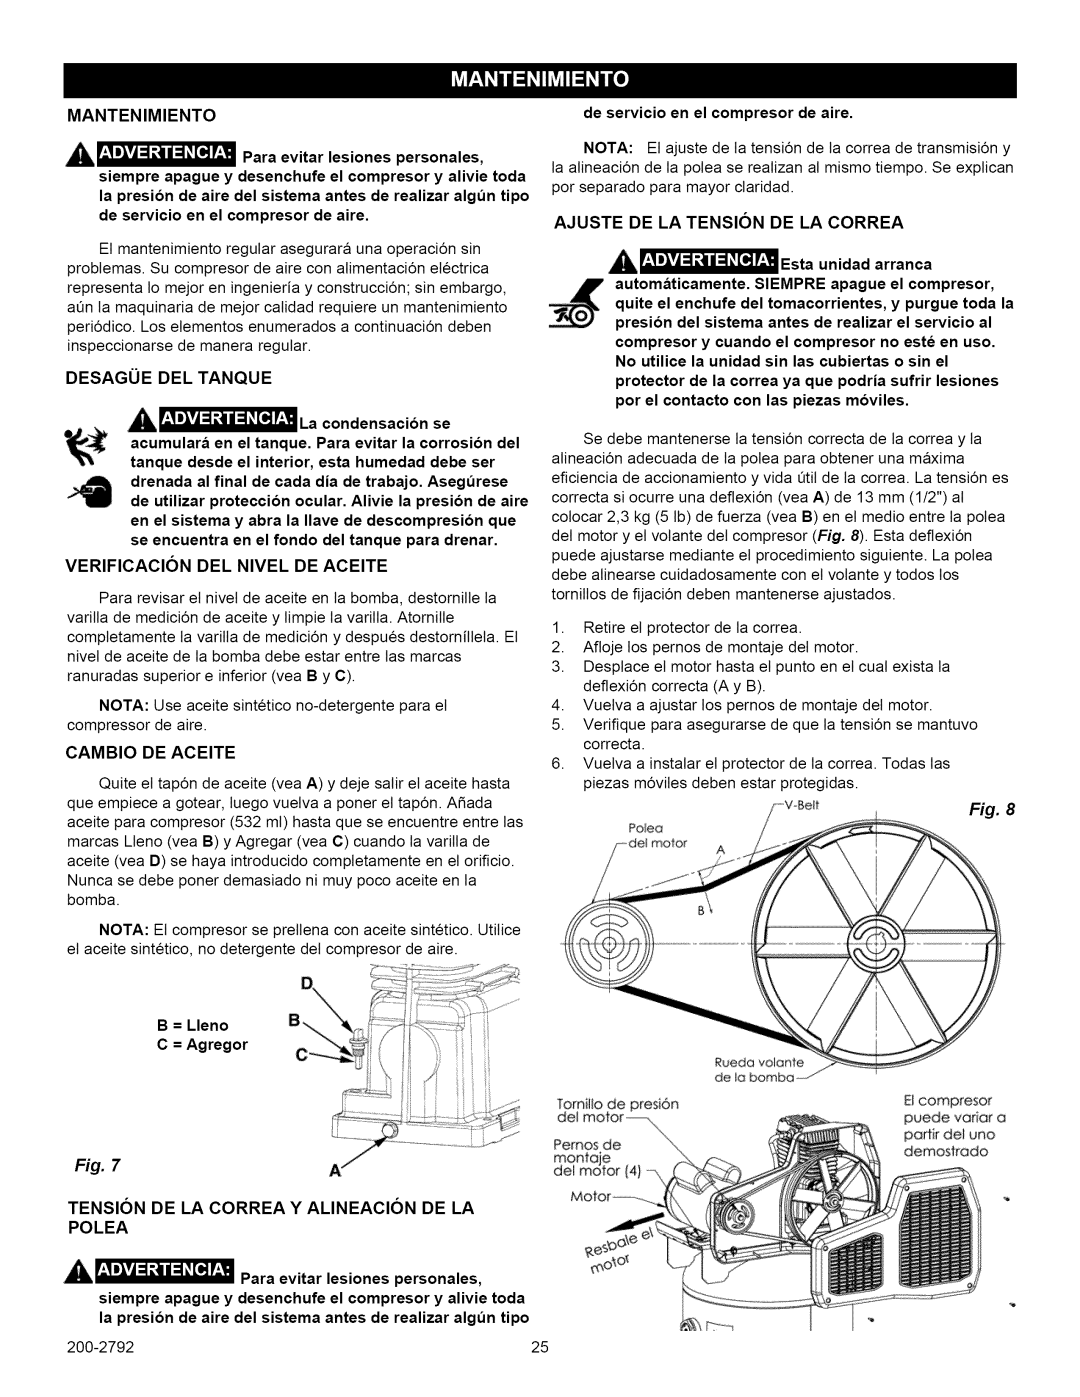 Craftsman 921.16475, 921.16474 owner manual Mantenimiento, Cambio De Aceite, Tension De La Correa Y Alineacion De La Polea 